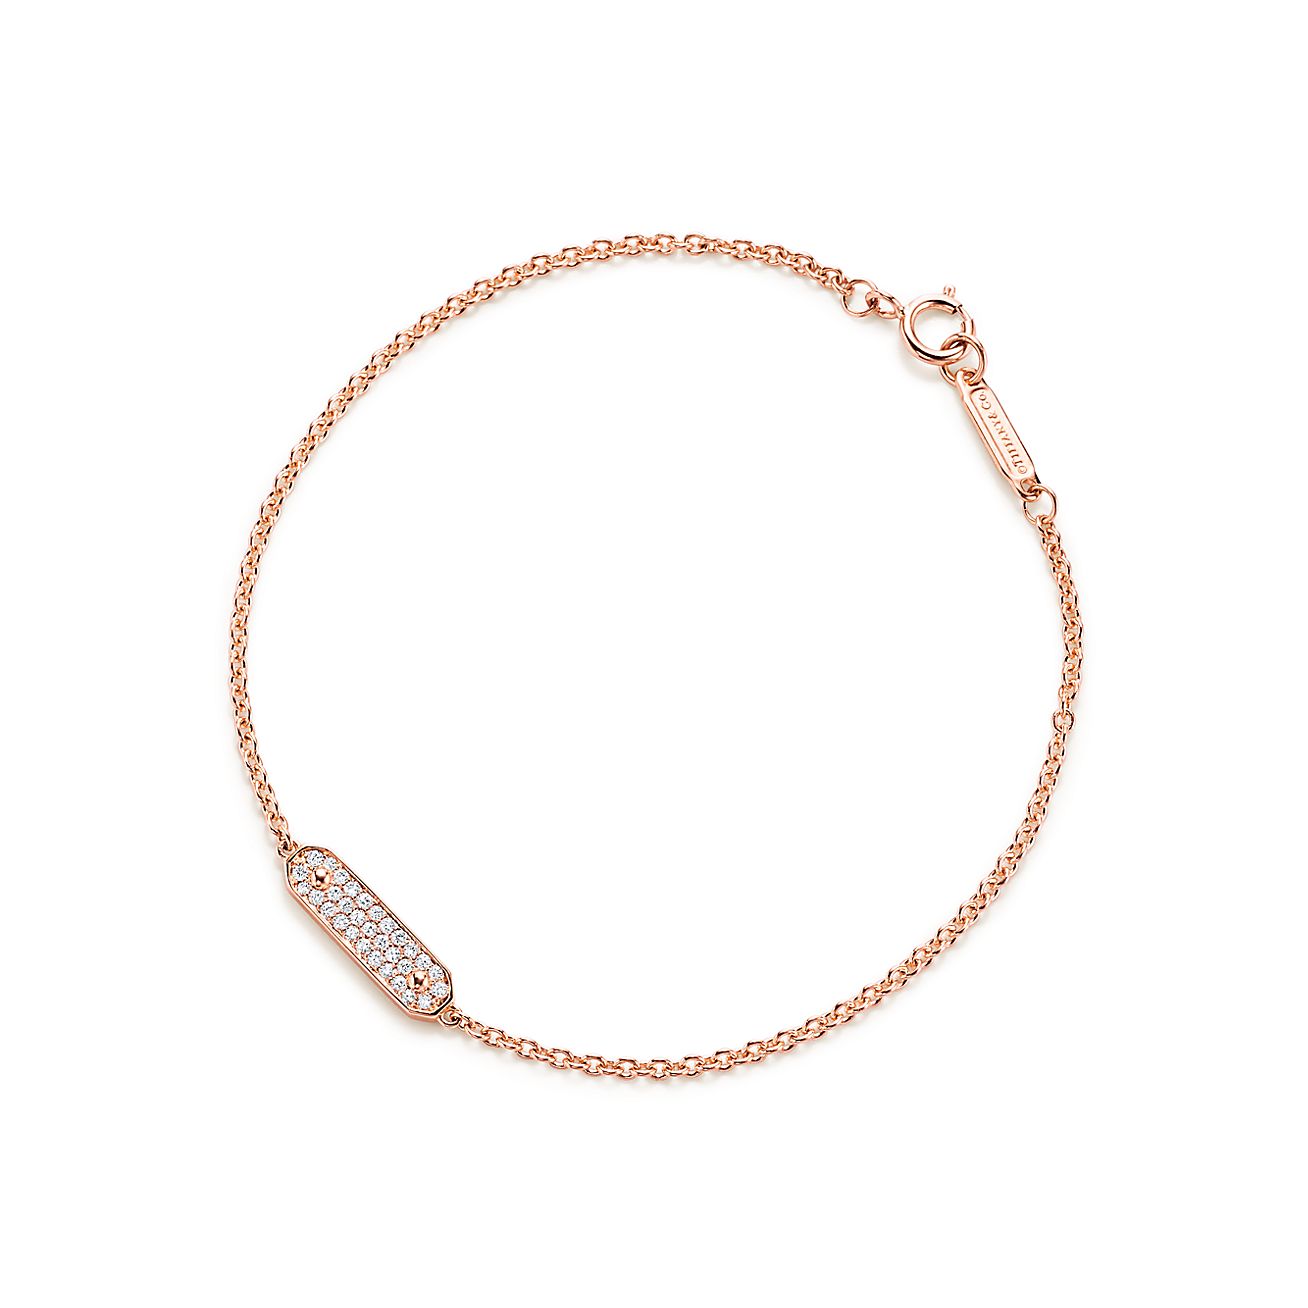 Tag chain bracelet in 18k rose gold 